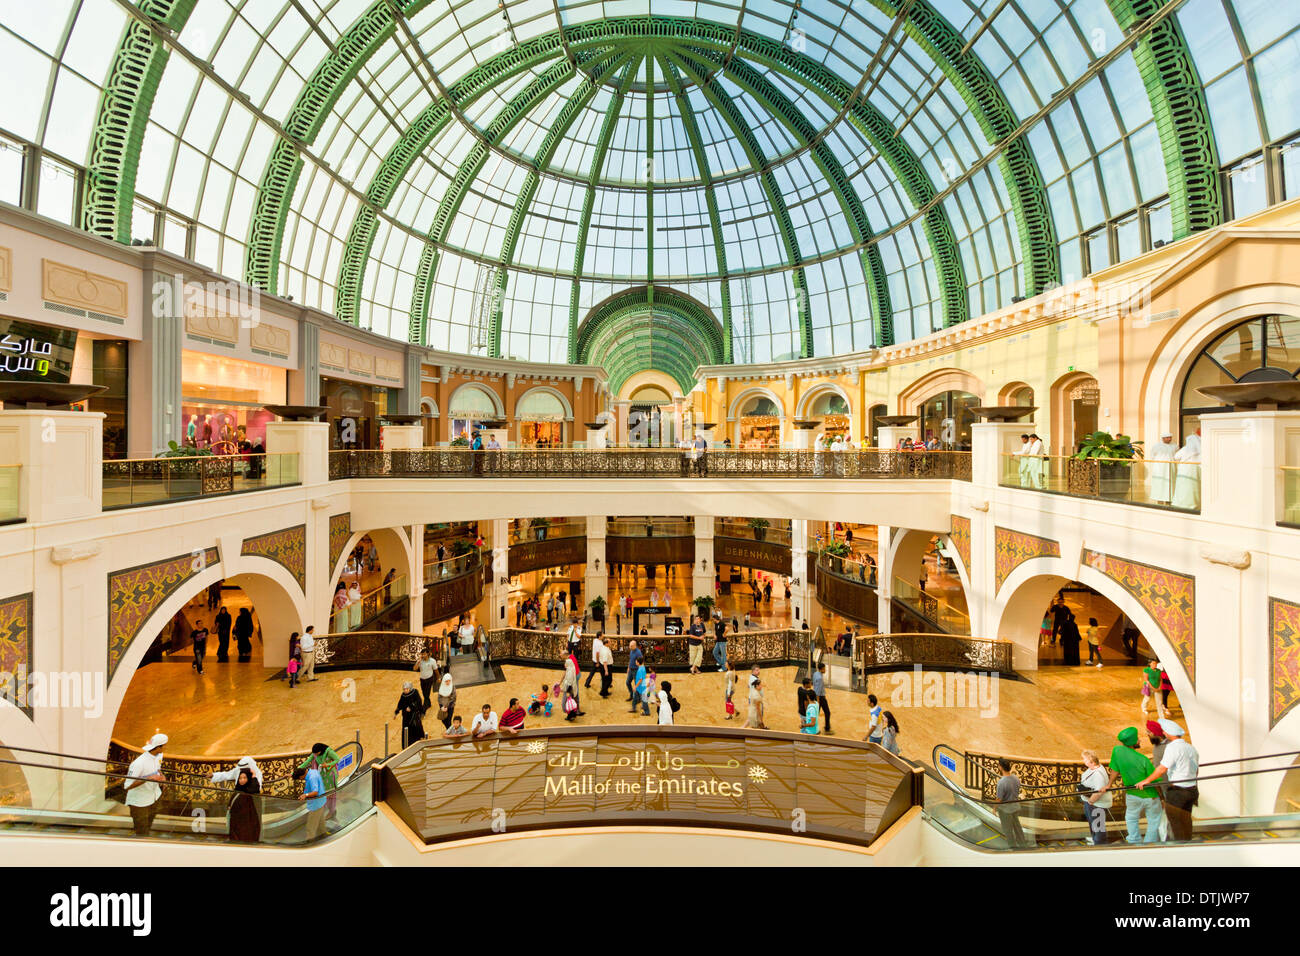 Interieur von der Mall of Emirates Dubai Shopping Mall, Dubai, Vereinigte Arabische Emirate, VAE Naher Osten Stockfoto